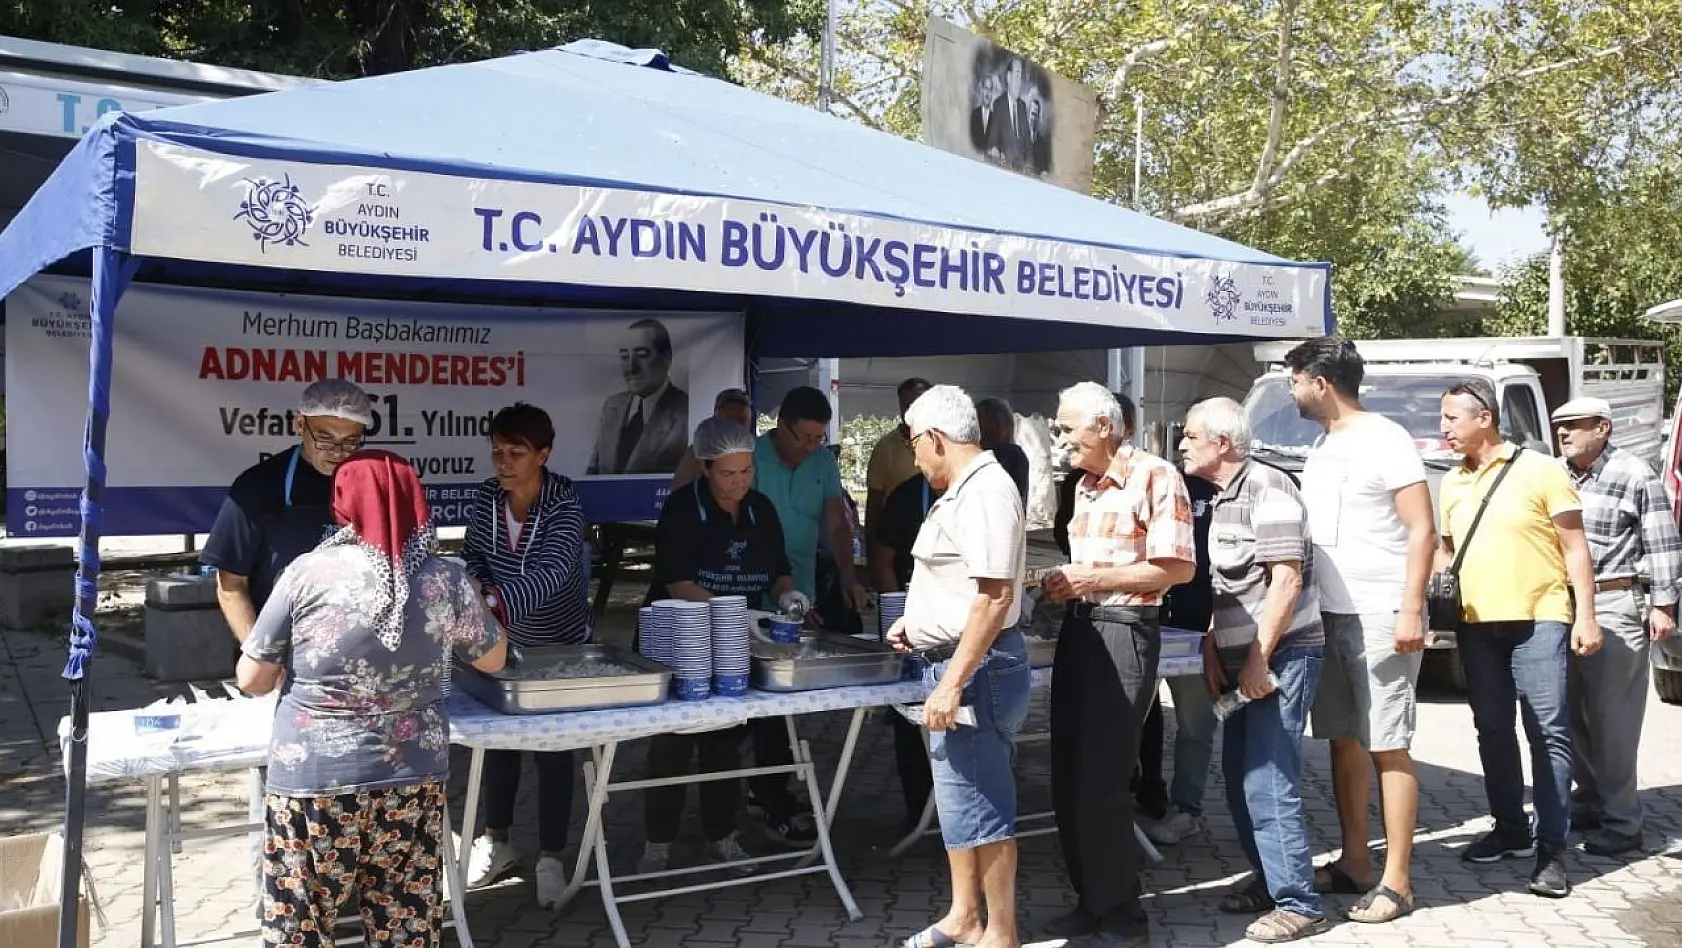 Aydın Büyükşehir Belediyesi merhum Başbakan Menderes'i andı